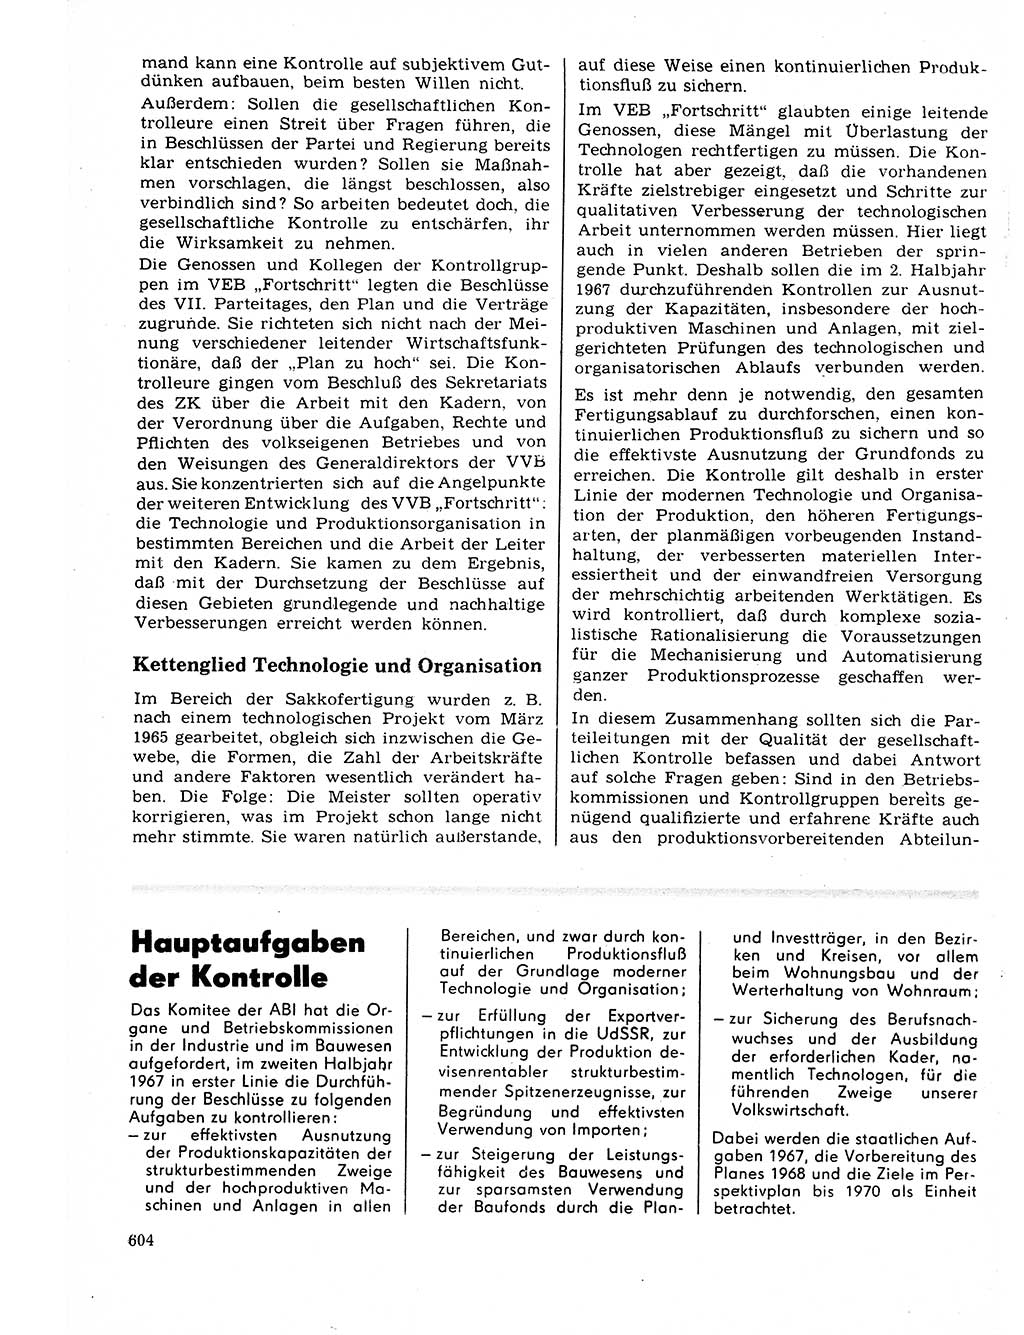 Neuer Weg (NW), Organ des Zentralkomitees (ZK) der SED (Sozialistische Einheitspartei Deutschlands) für Fragen des Parteilebens, 22. Jahrgang [Deutsche Demokratische Republik (DDR)] 1967, Seite 604 (NW ZK SED DDR 1967, S. 604)